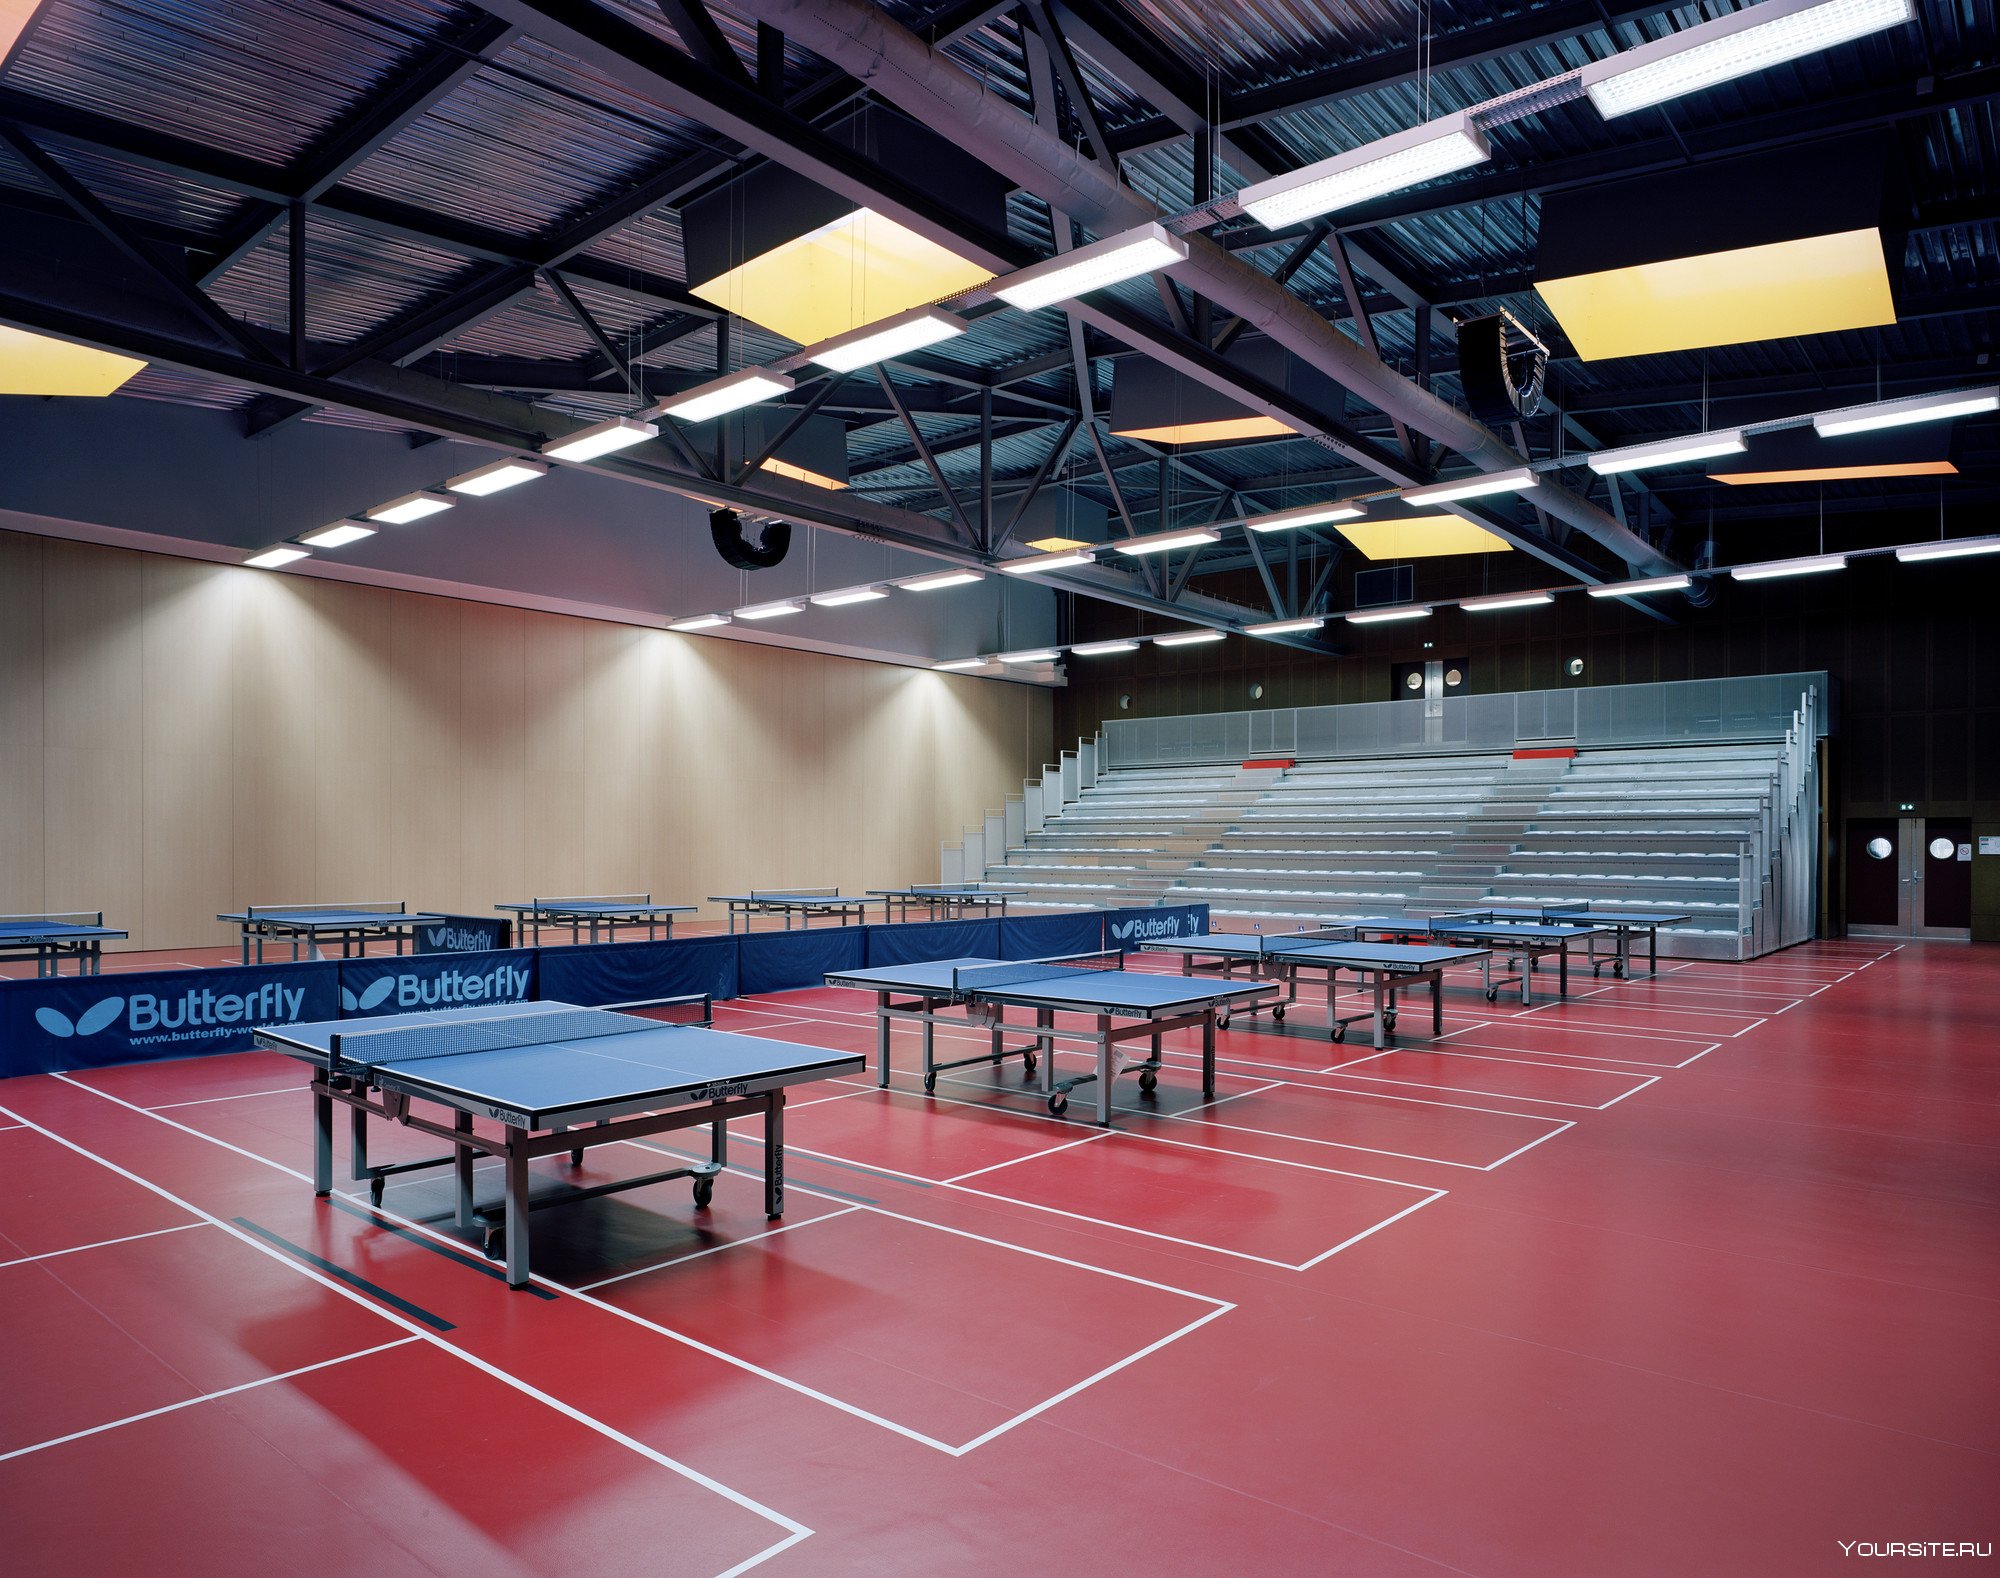 Зона настольного тенниса. Спортивный зал. Зал для настольного тенниса. Теннис зал. Спортивные помещения.